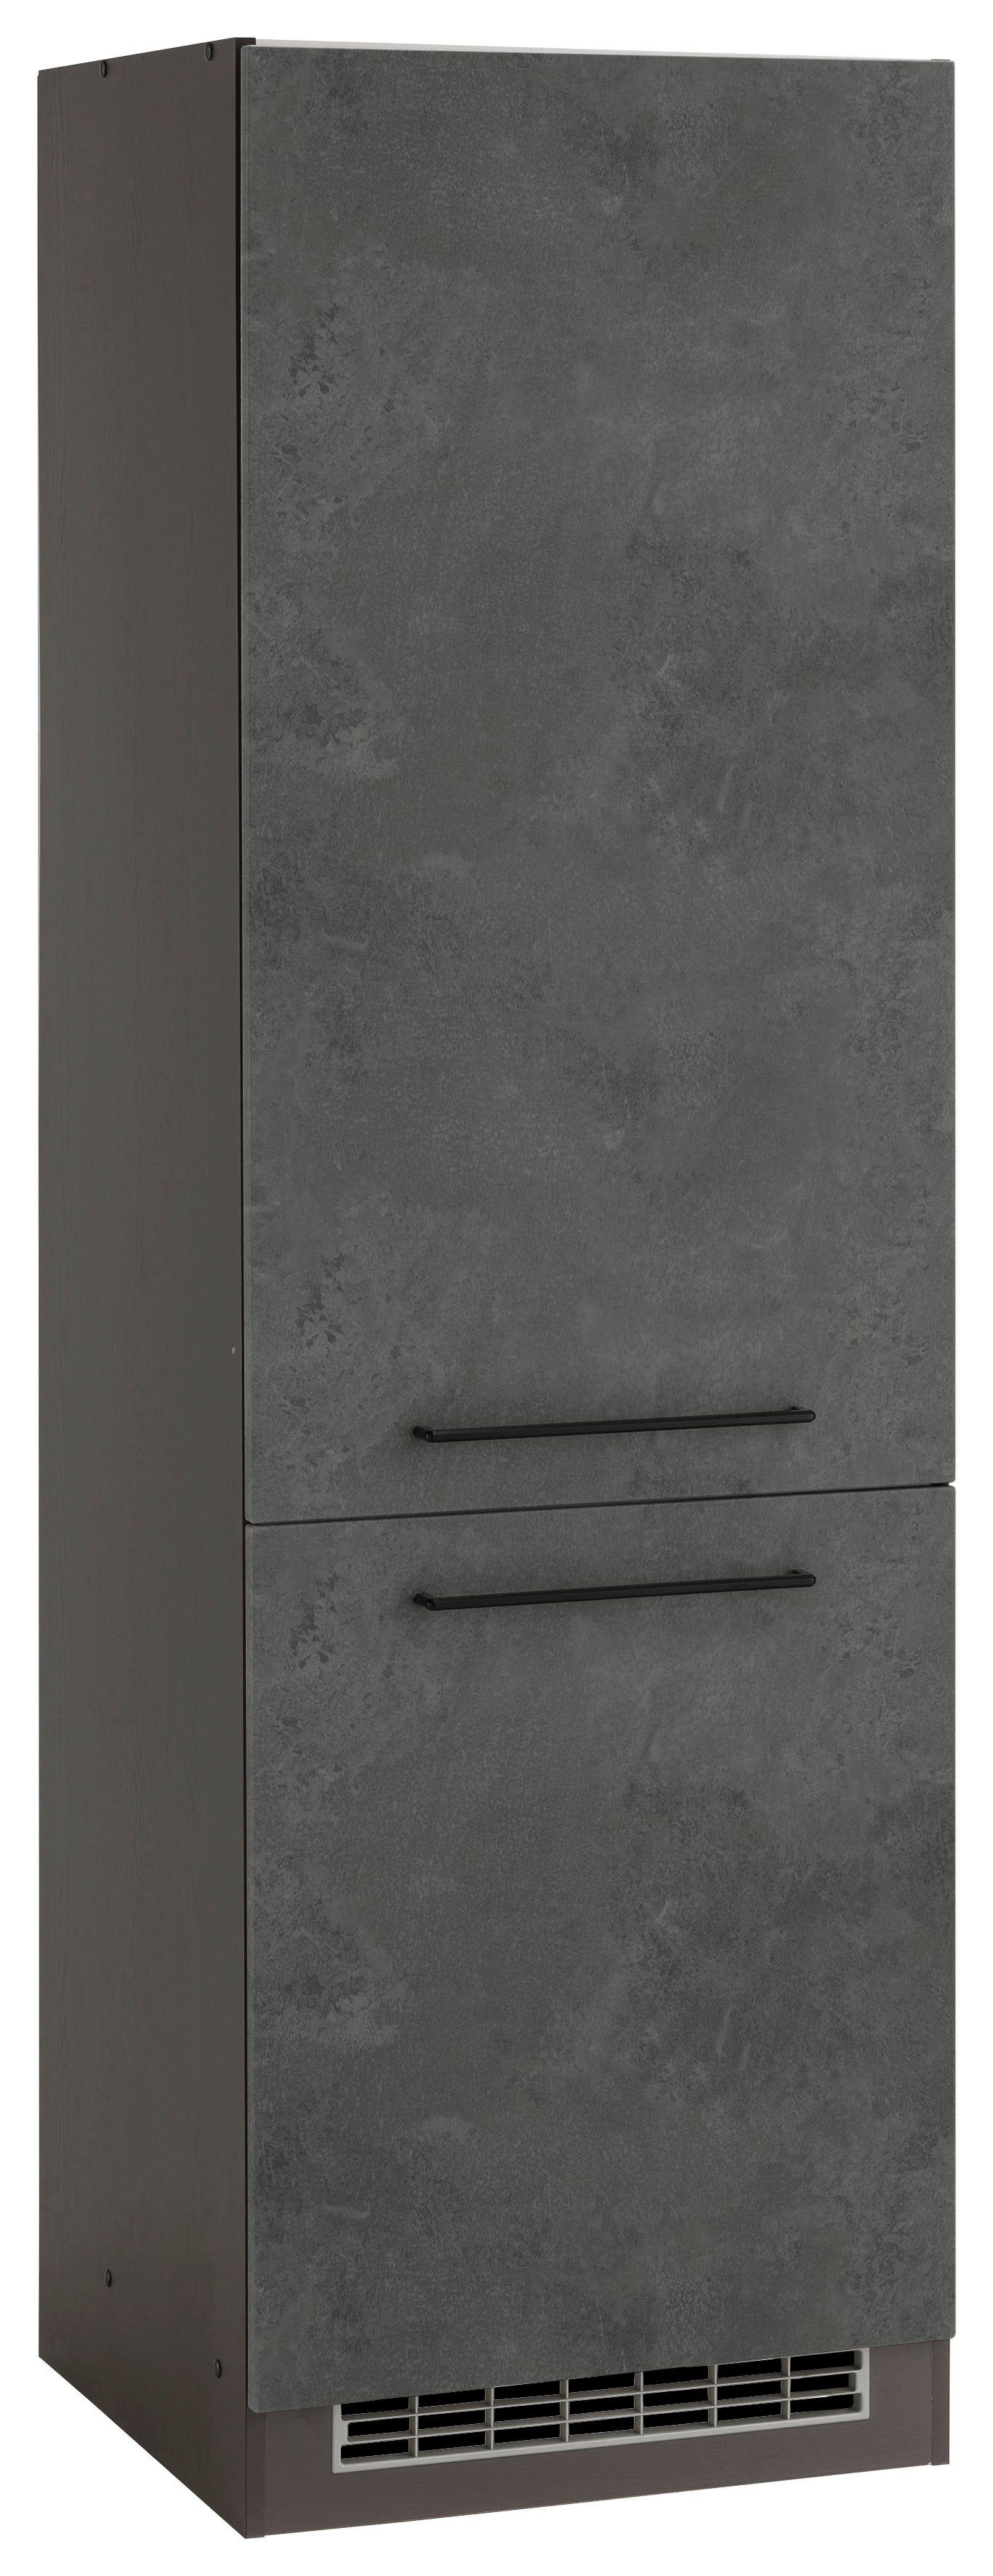 HELD MÖBEL Kühlumbauschrank Tulsa 60 cm breit, 200 cm hoch, 2 Türen, schwarzer Metallgriff, MDF Front betonfarben dunkel | grafit | Umbauschränke